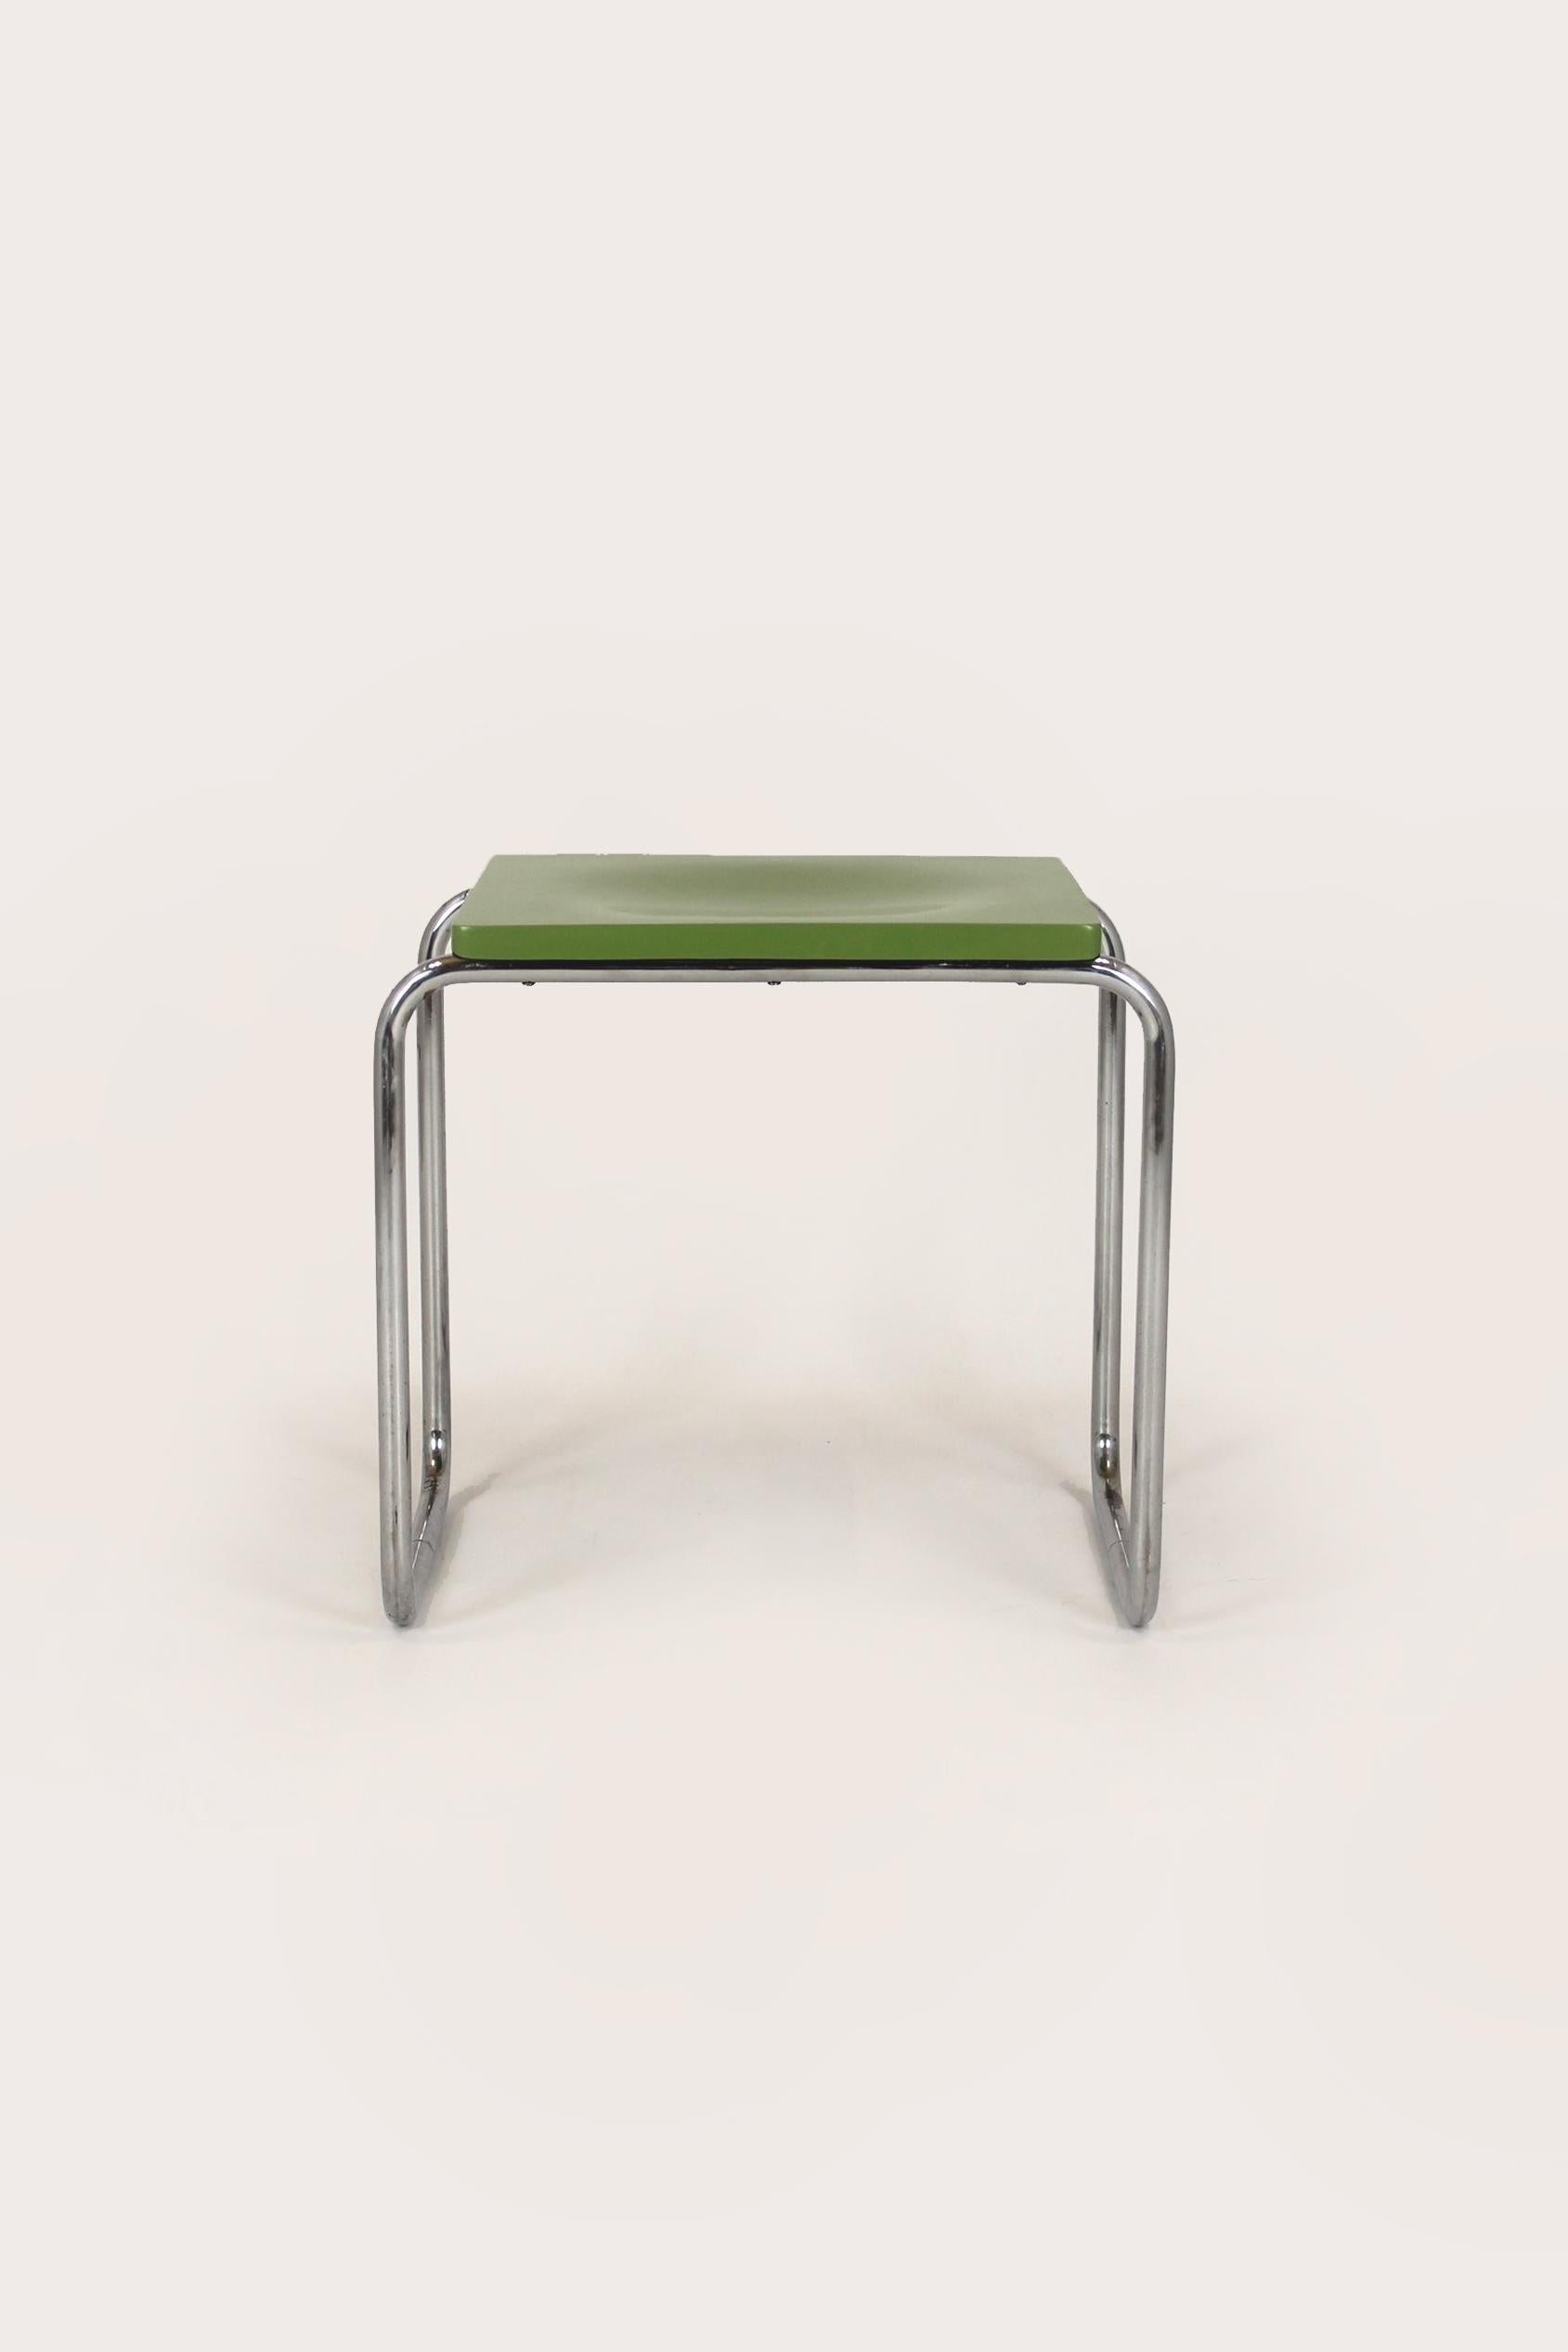 
Ce tabouret de style Bauhaus a été fabriqué par Slezak en République tchèque dans les années 1930. Fabriqué en acier tubulaire chromé avec une assise en contreplaqué moulé. Éléments en acier en bon état avec patine visible, siège repeint dans la